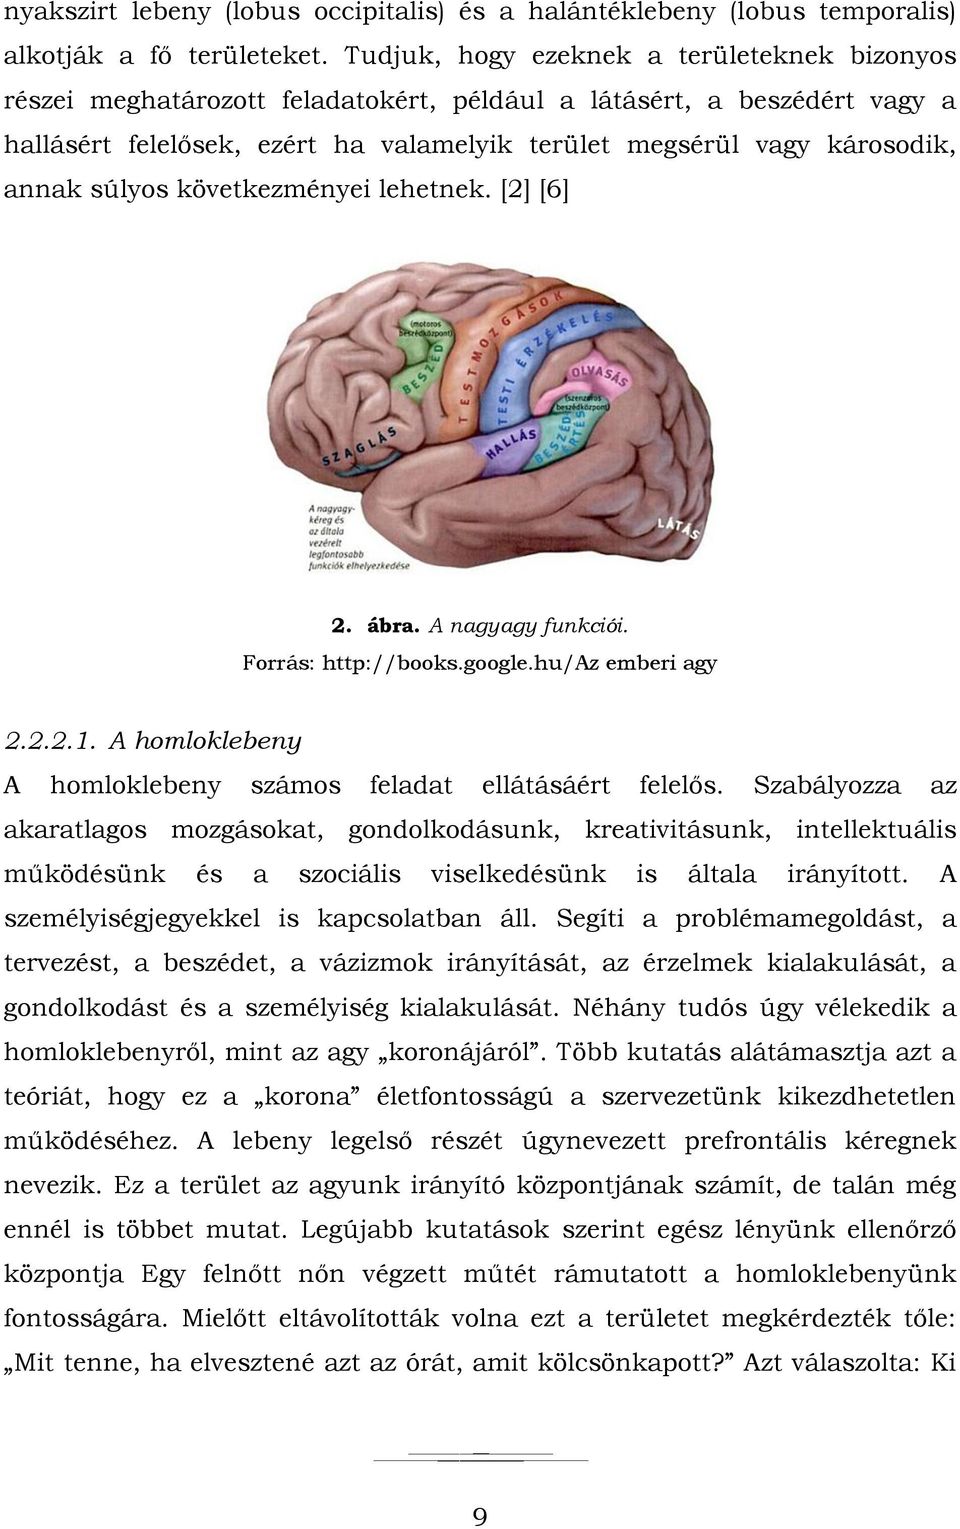 súlyos következményei lehetnek. [2] [6] 2. ábra. A nagyagy funkciói. Forrás: http://books.google.hu/az emberi agy 2.2.2.1. A homloklebeny A homloklebeny számos feladat ellátásáért felelős.